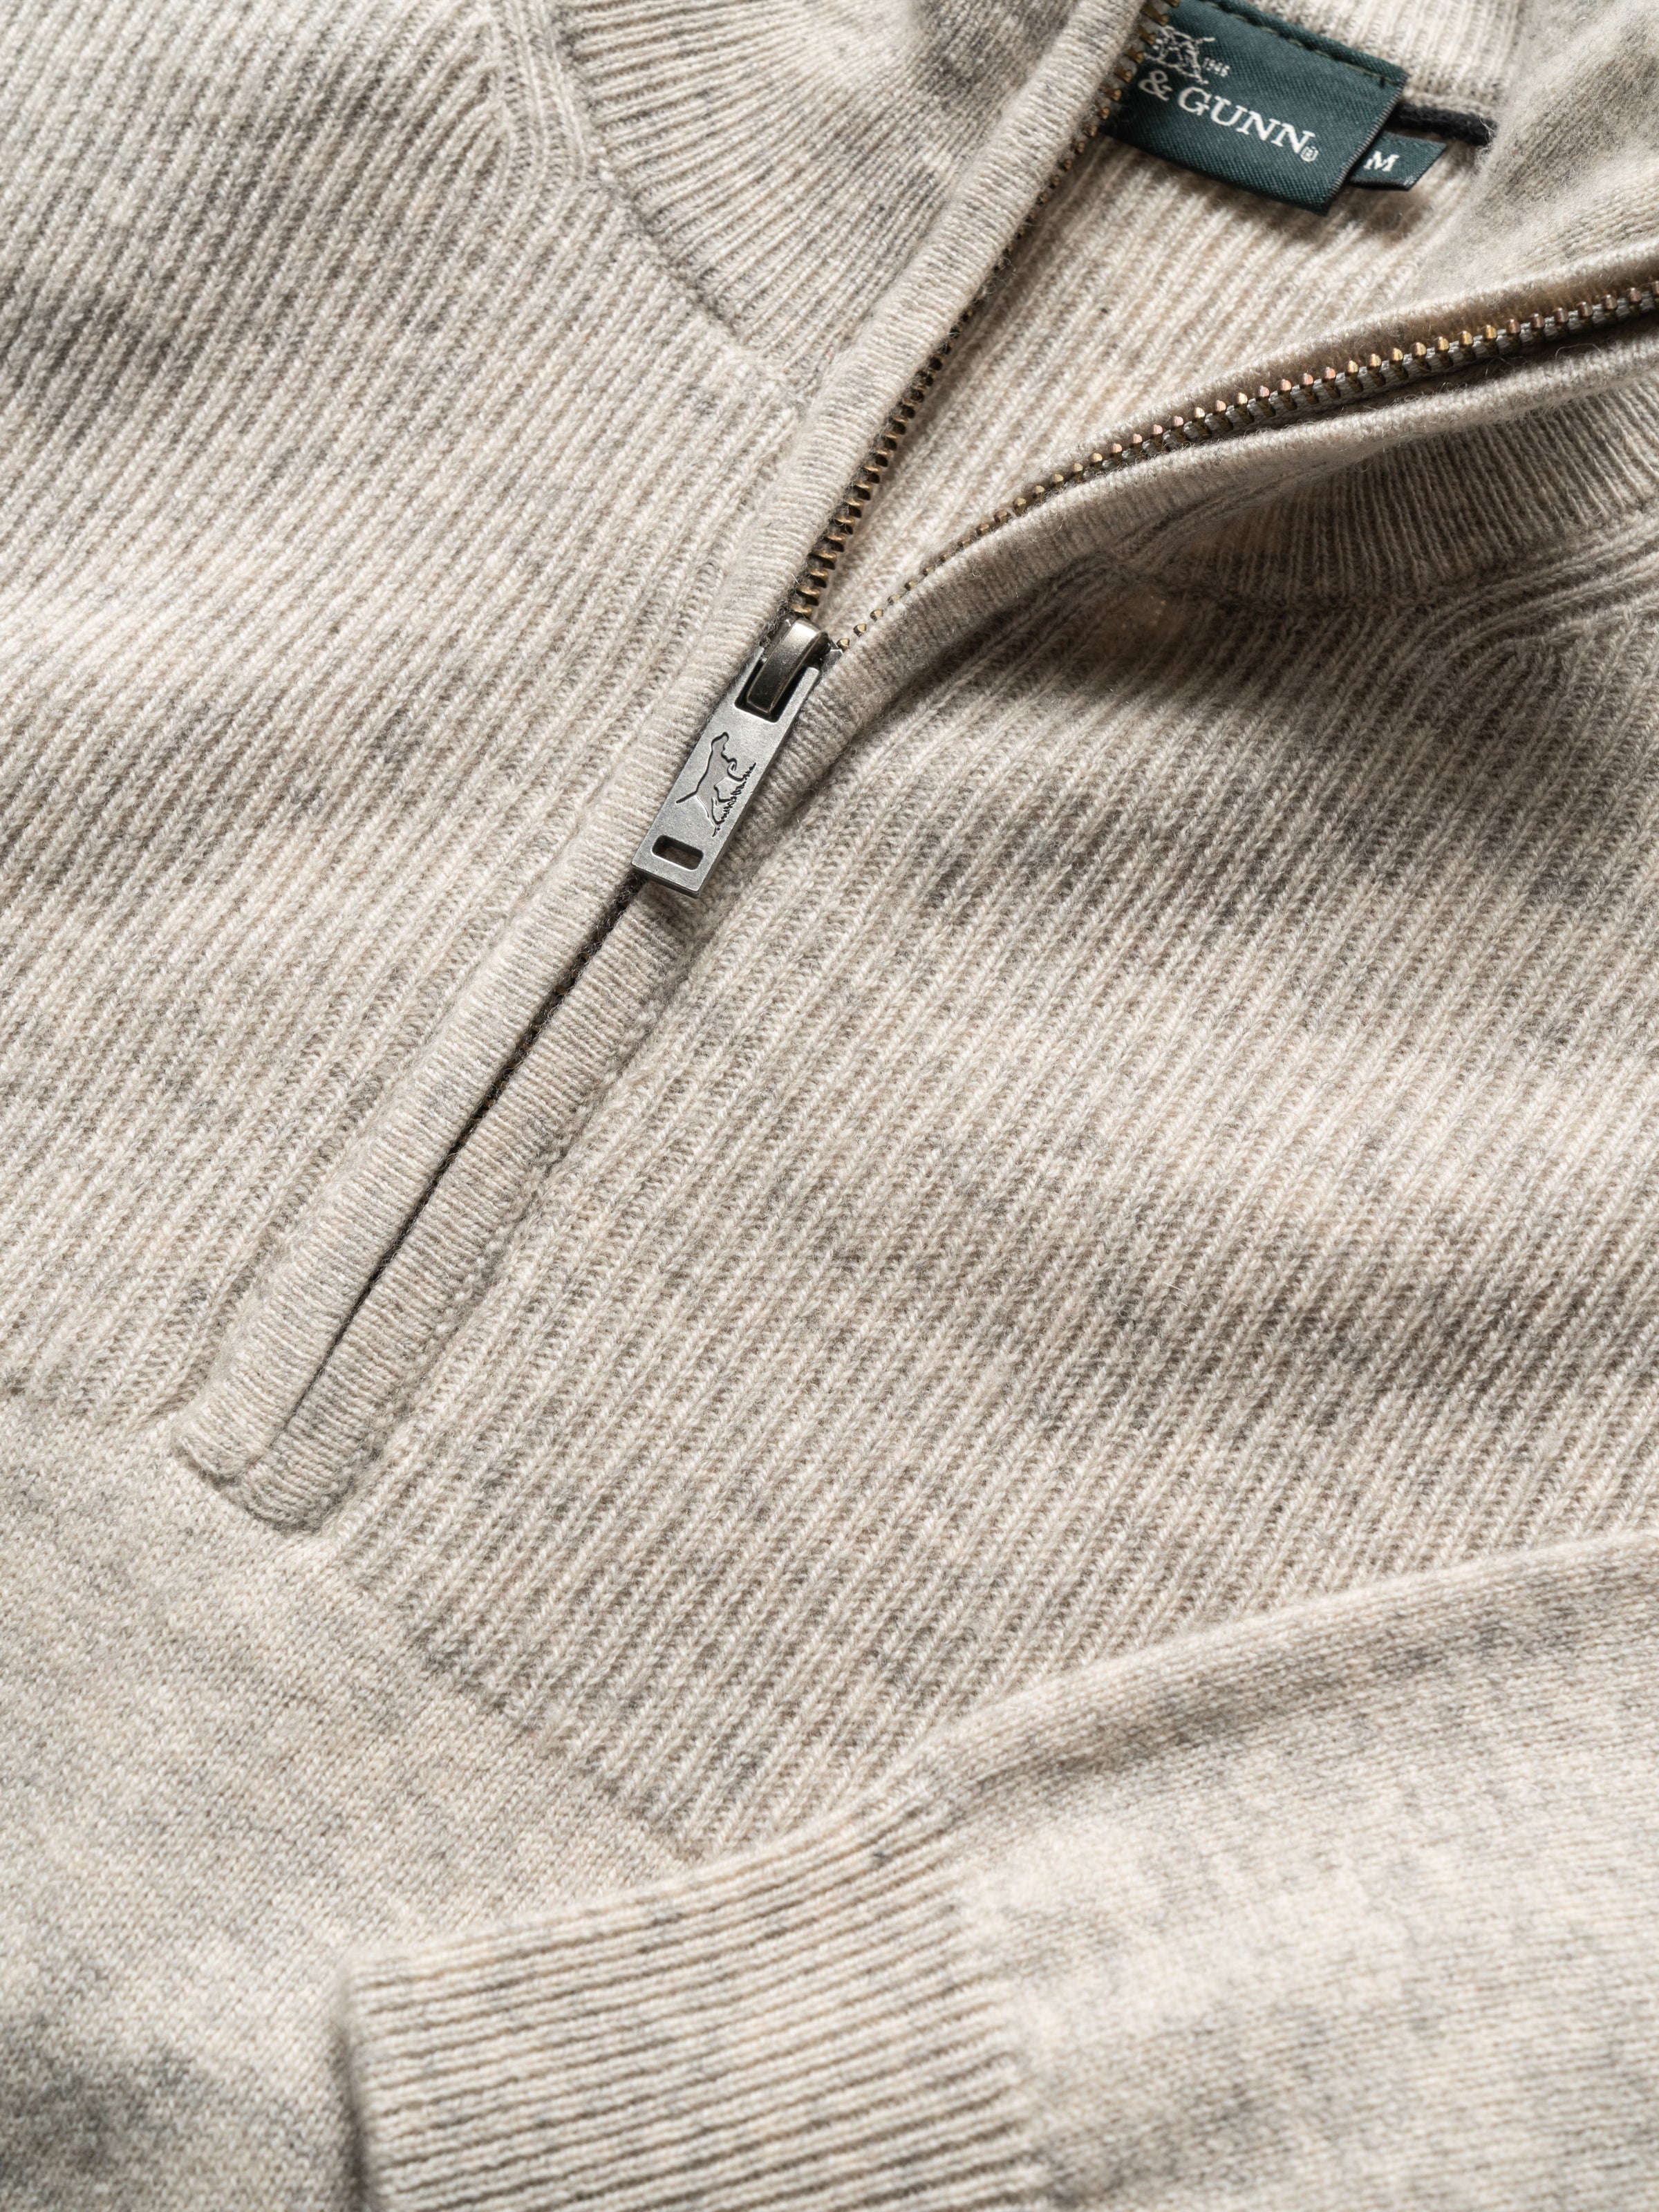 Rodd & Gunn Mount Allan Quarter Zip Cashmere Wool Blend Sweater